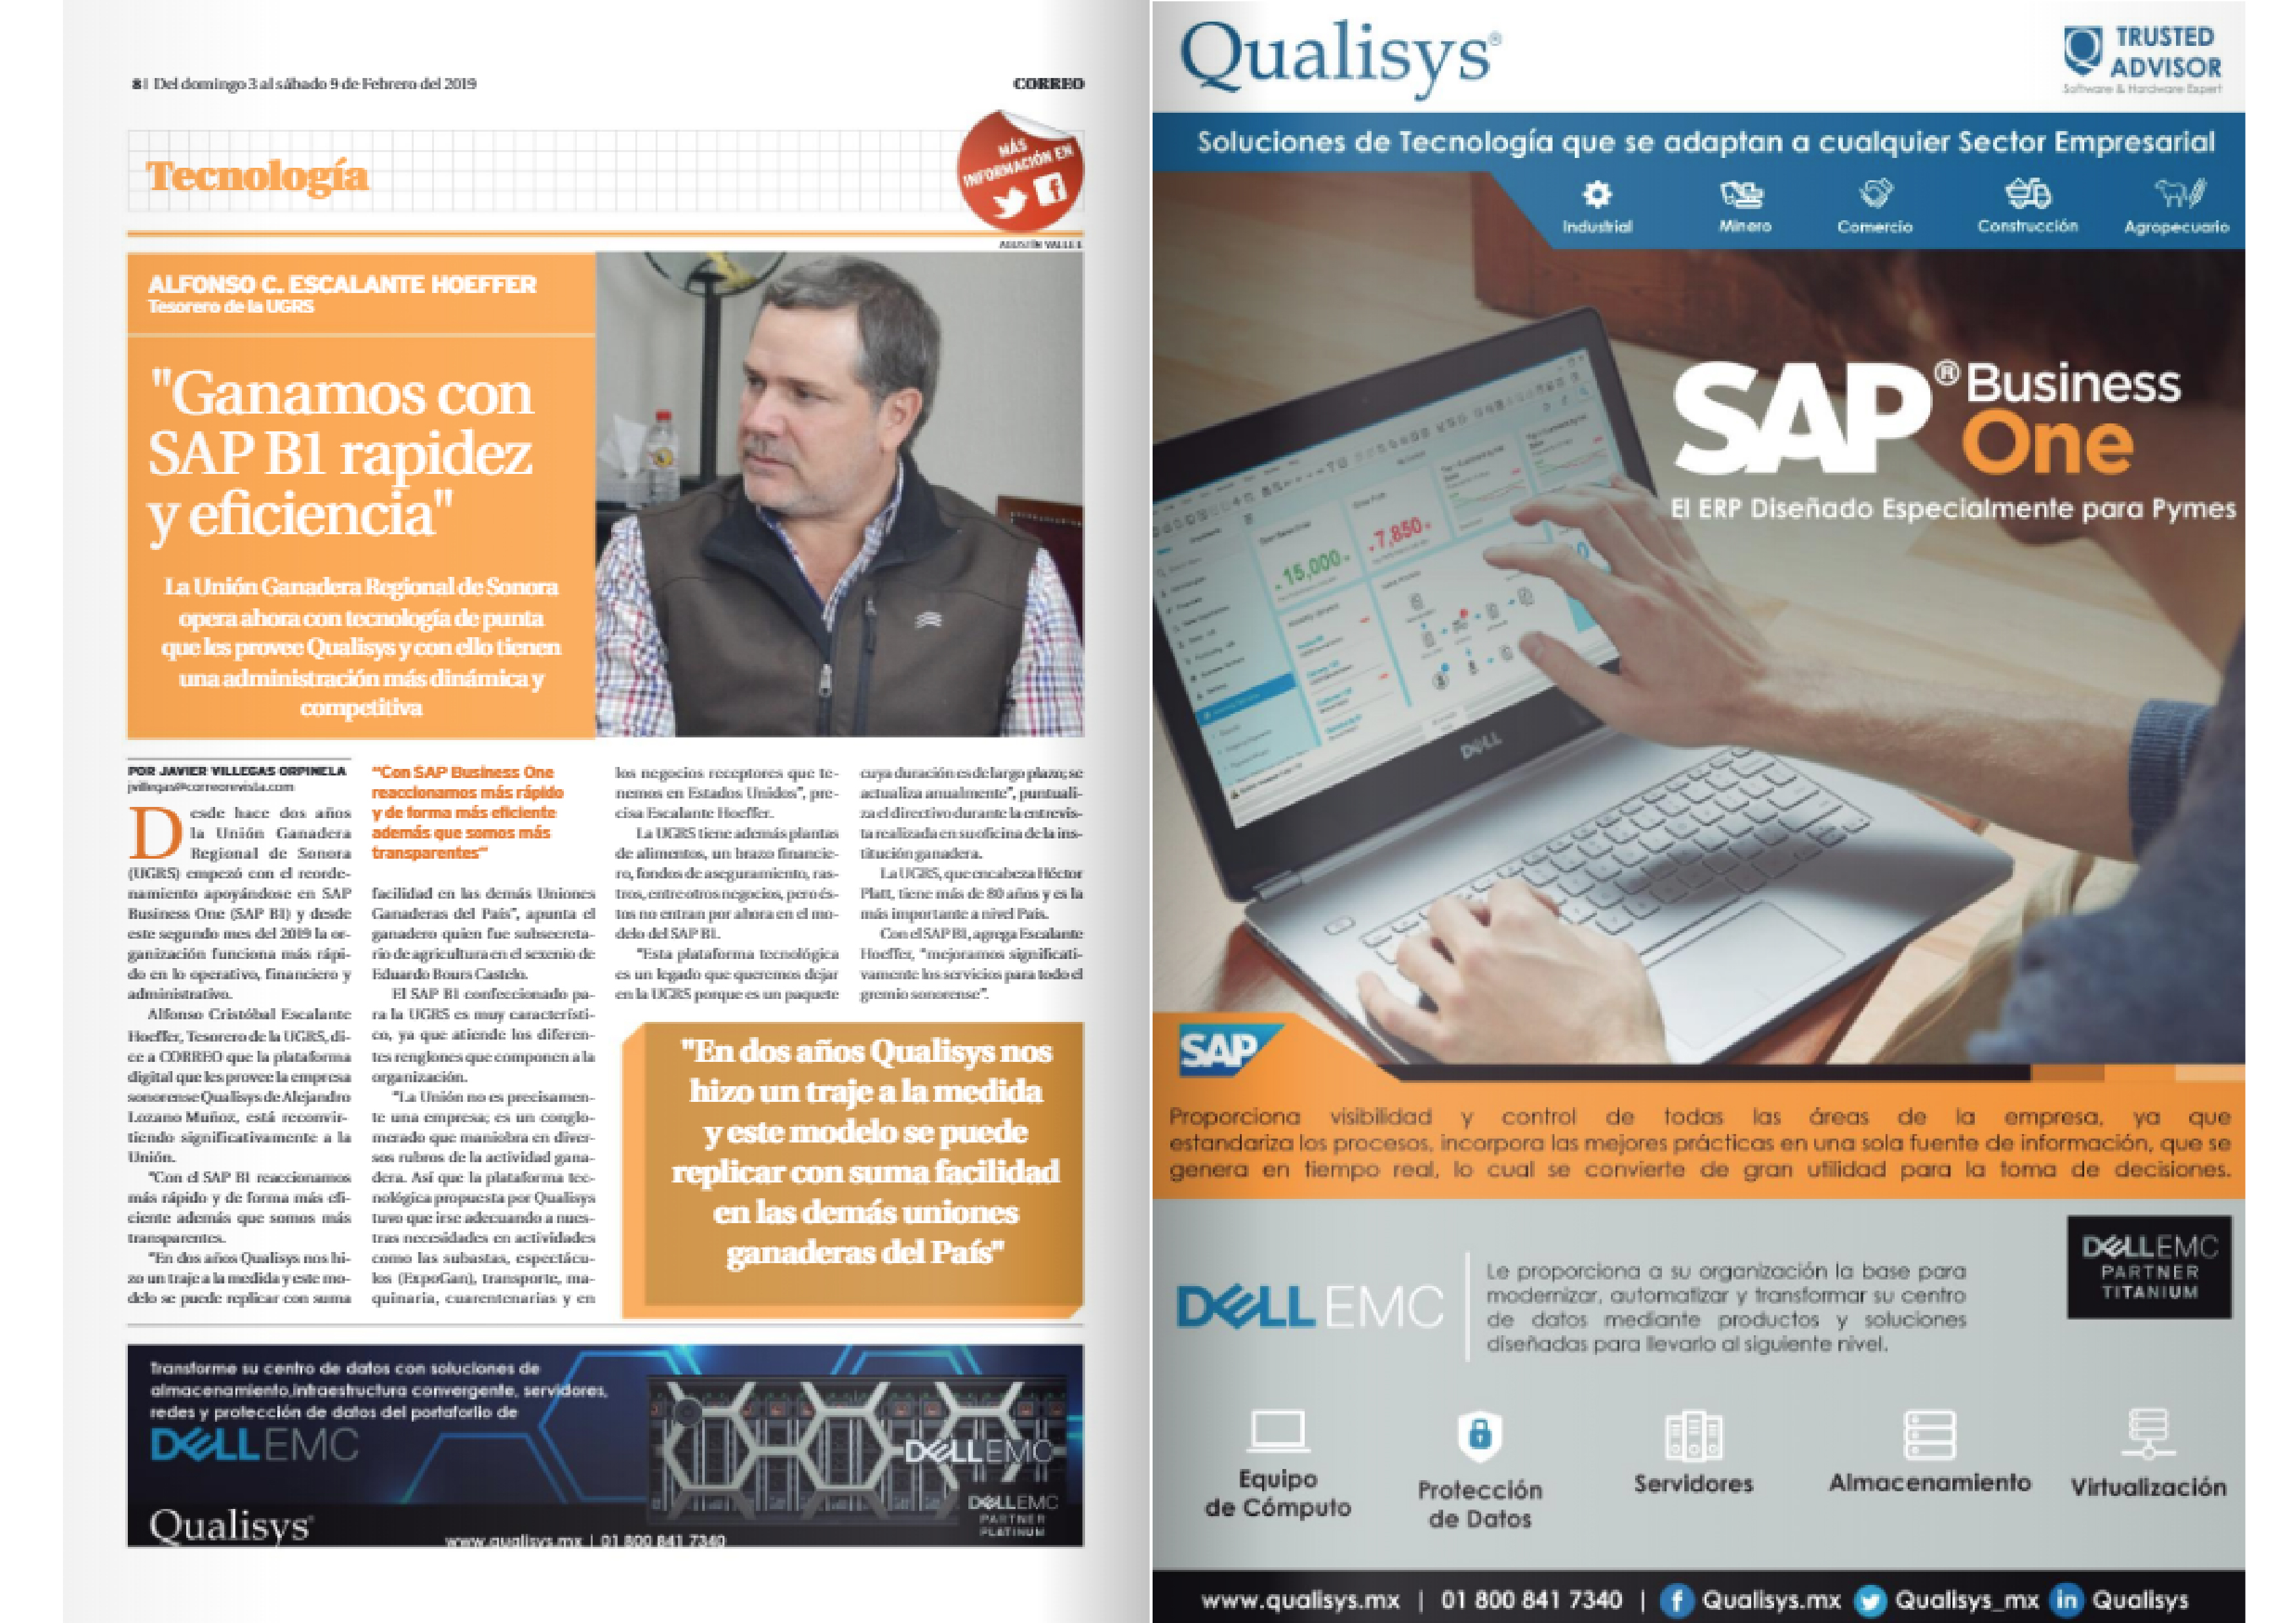 Ganamos con SAP Business One rapidez y eficiencia - Image